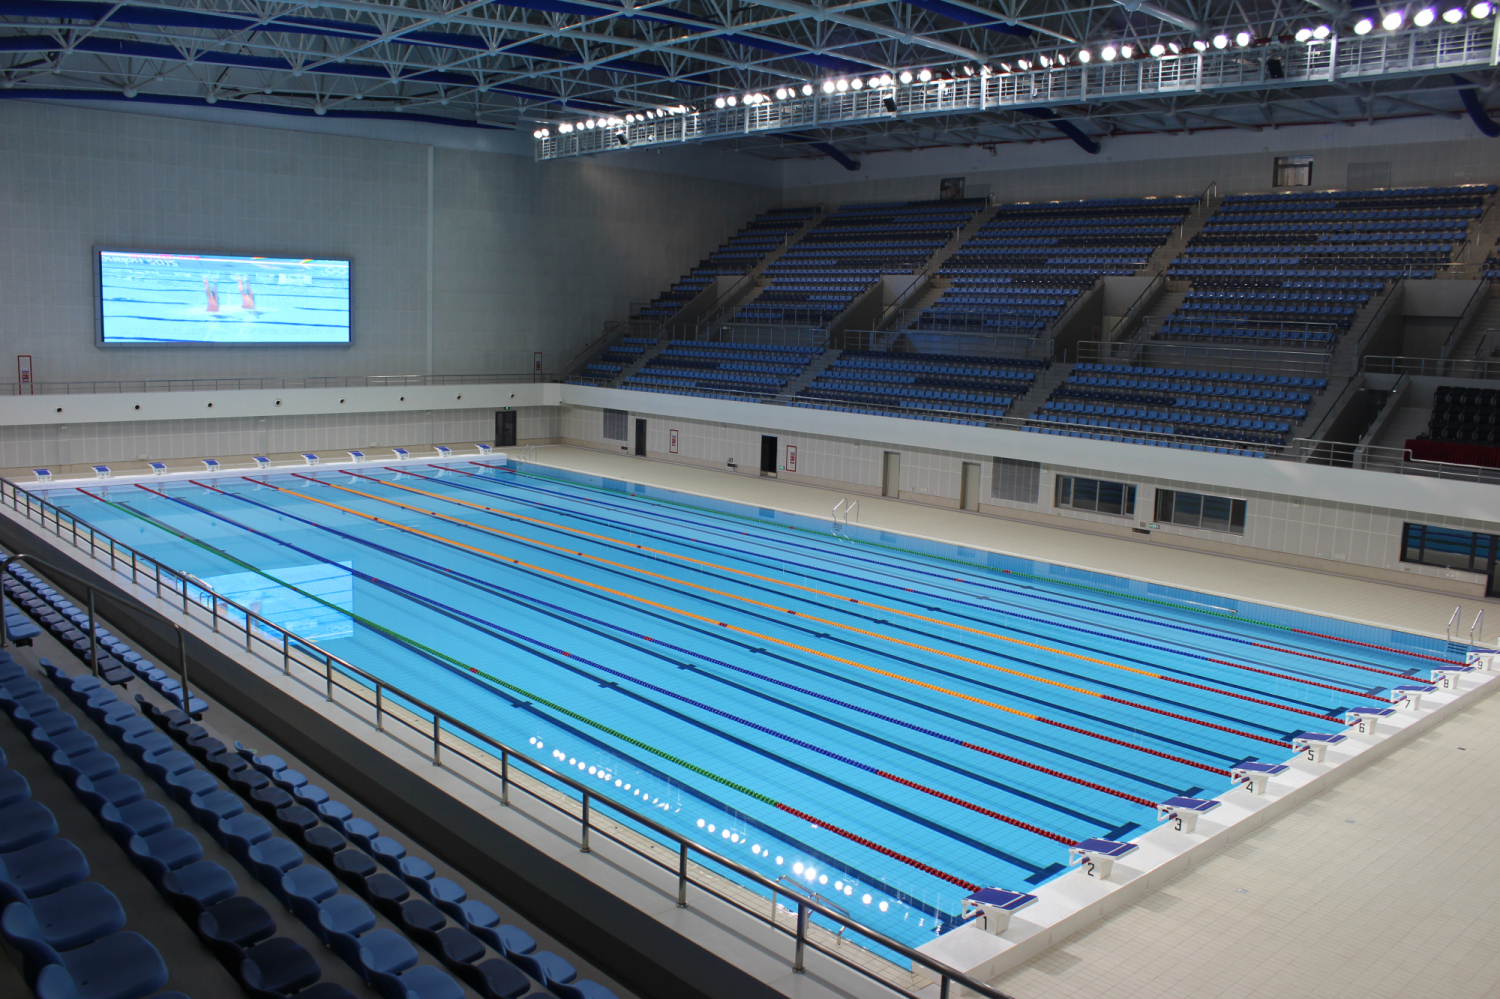 notice       体育中心游泳馆比赛池(3米)将于2021年7月15日起对外